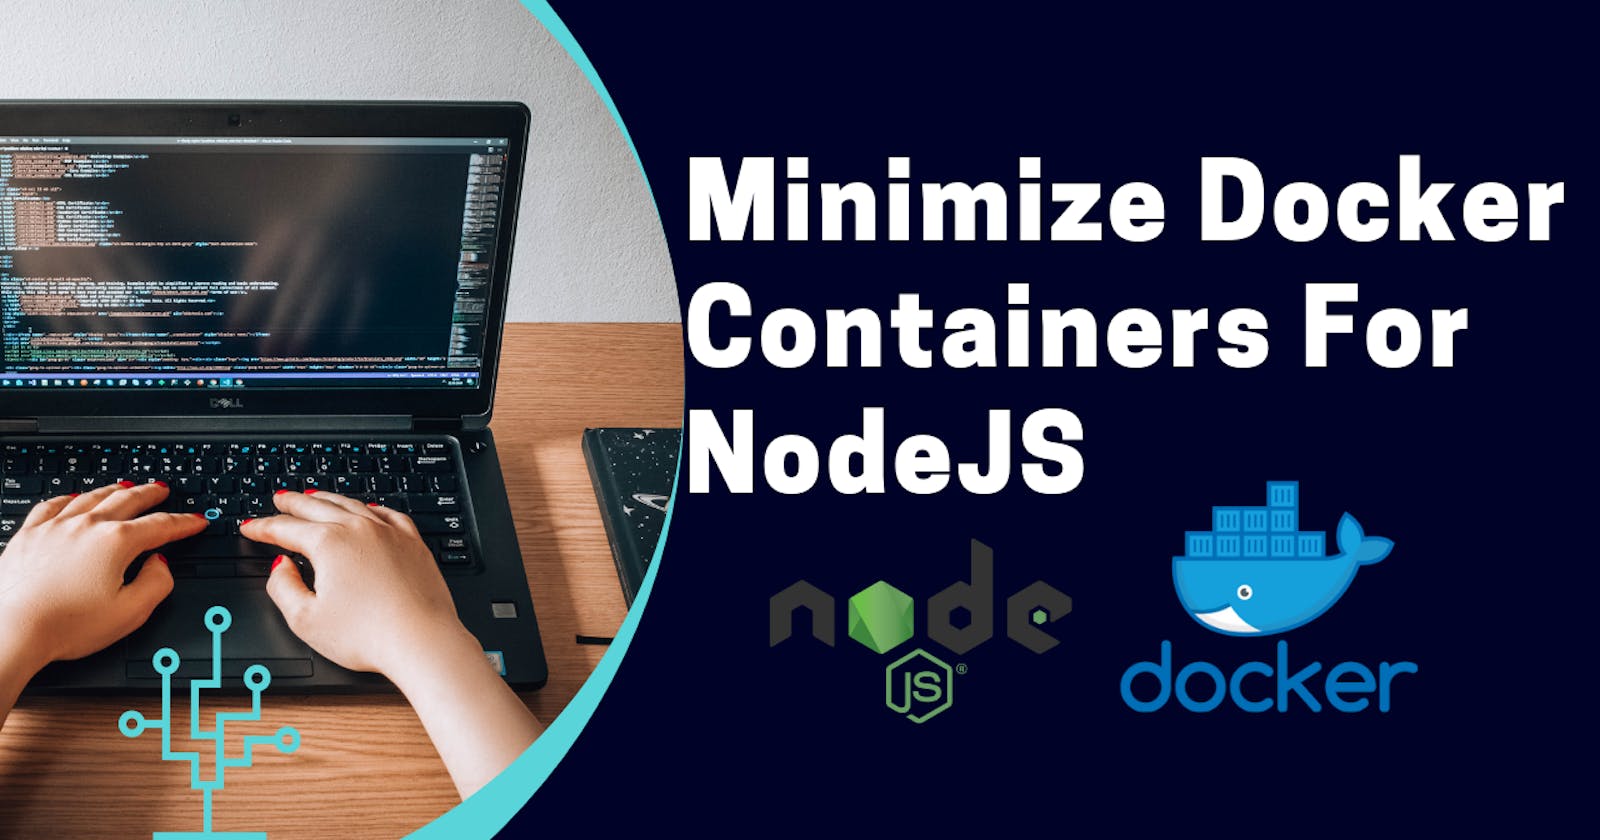 Minimize Docker Container for NodeJS